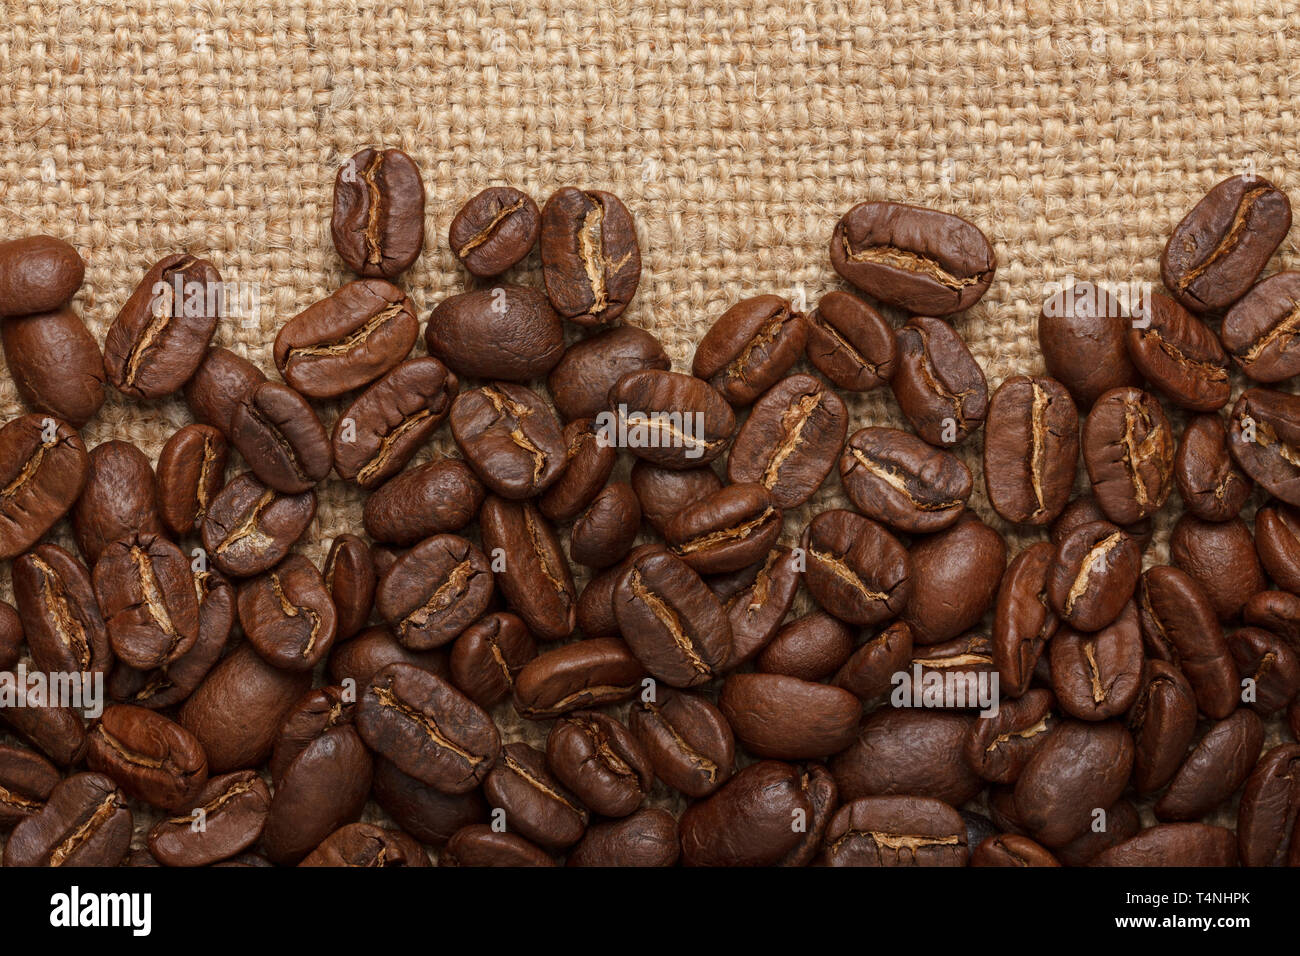 Los granos de café en el fondo de saco Foto de stock